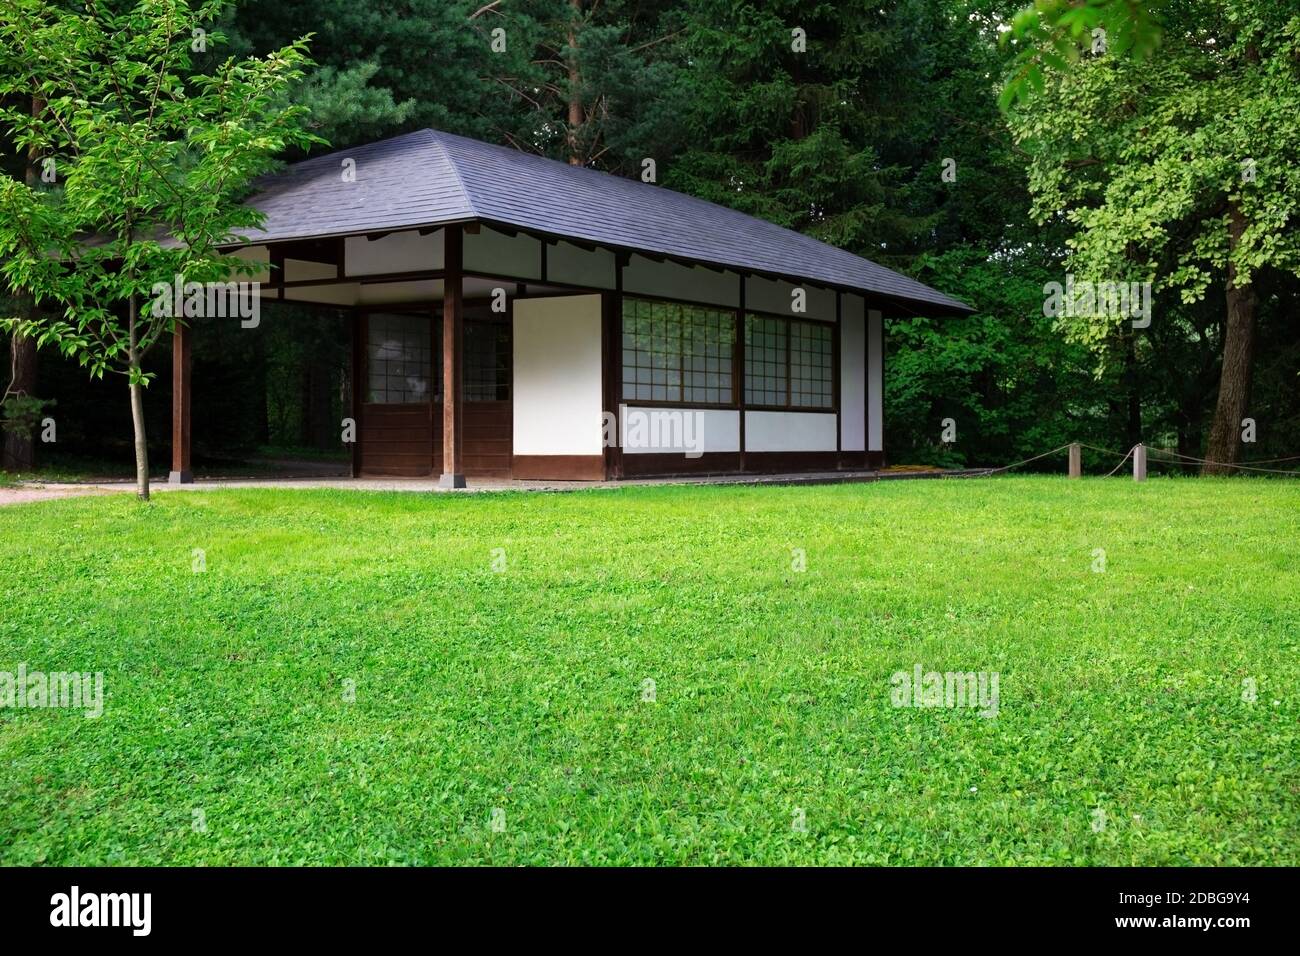 Architecture japonaise traditionnelle.la façade d'une petite maison japonaise traditionnelle parmi les arbres, un jardin et une pelouse verte. Maison japonaise en bois Banque D'Images